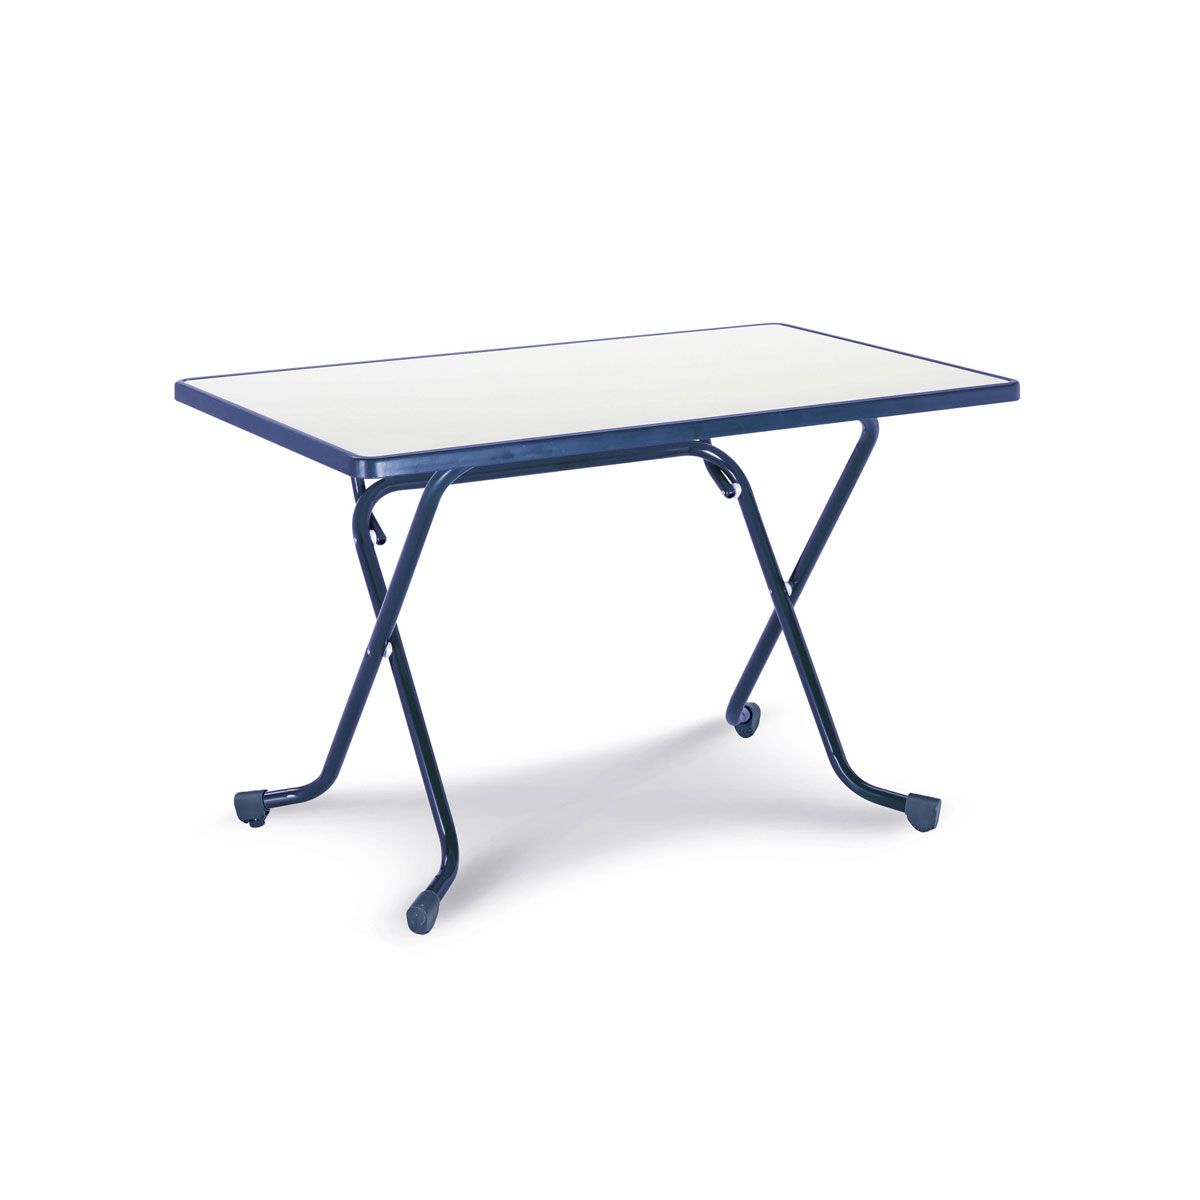 Freizeitmöbel BEST 110 Blau Scherenklapptisch blau | K000067704 | 110x70 | cm 70 x